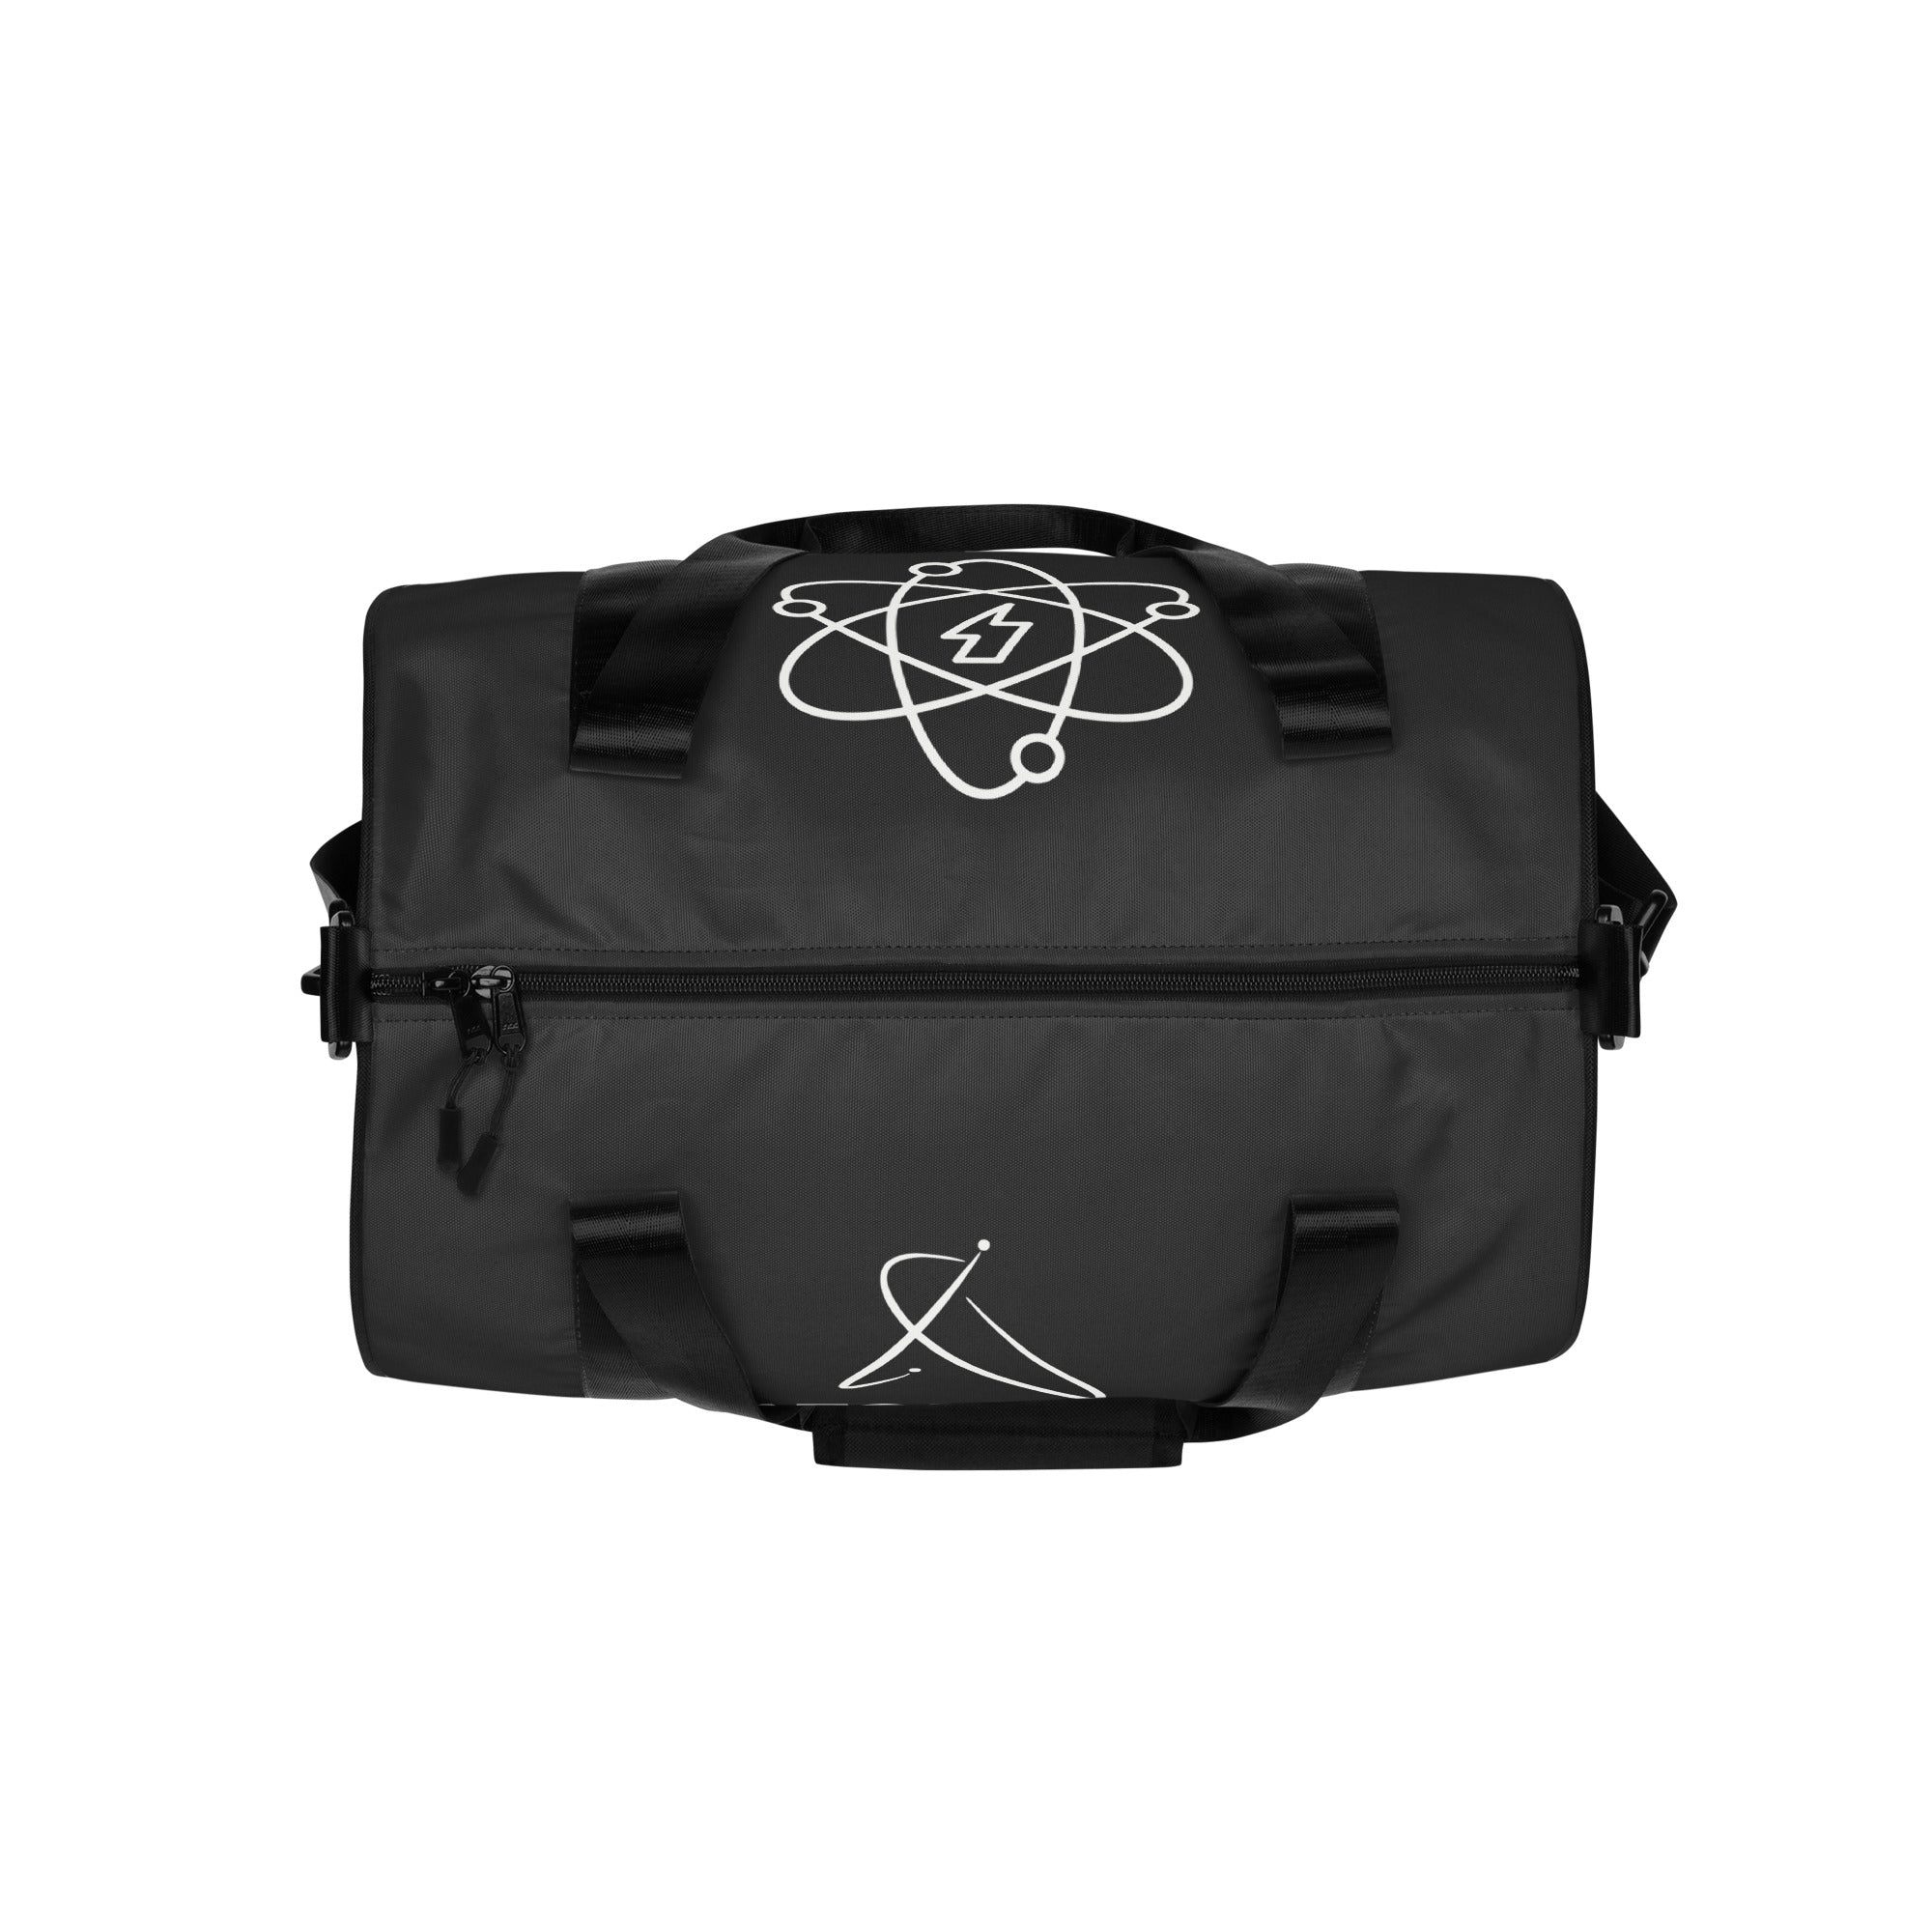 Atomical Black Gym Bag